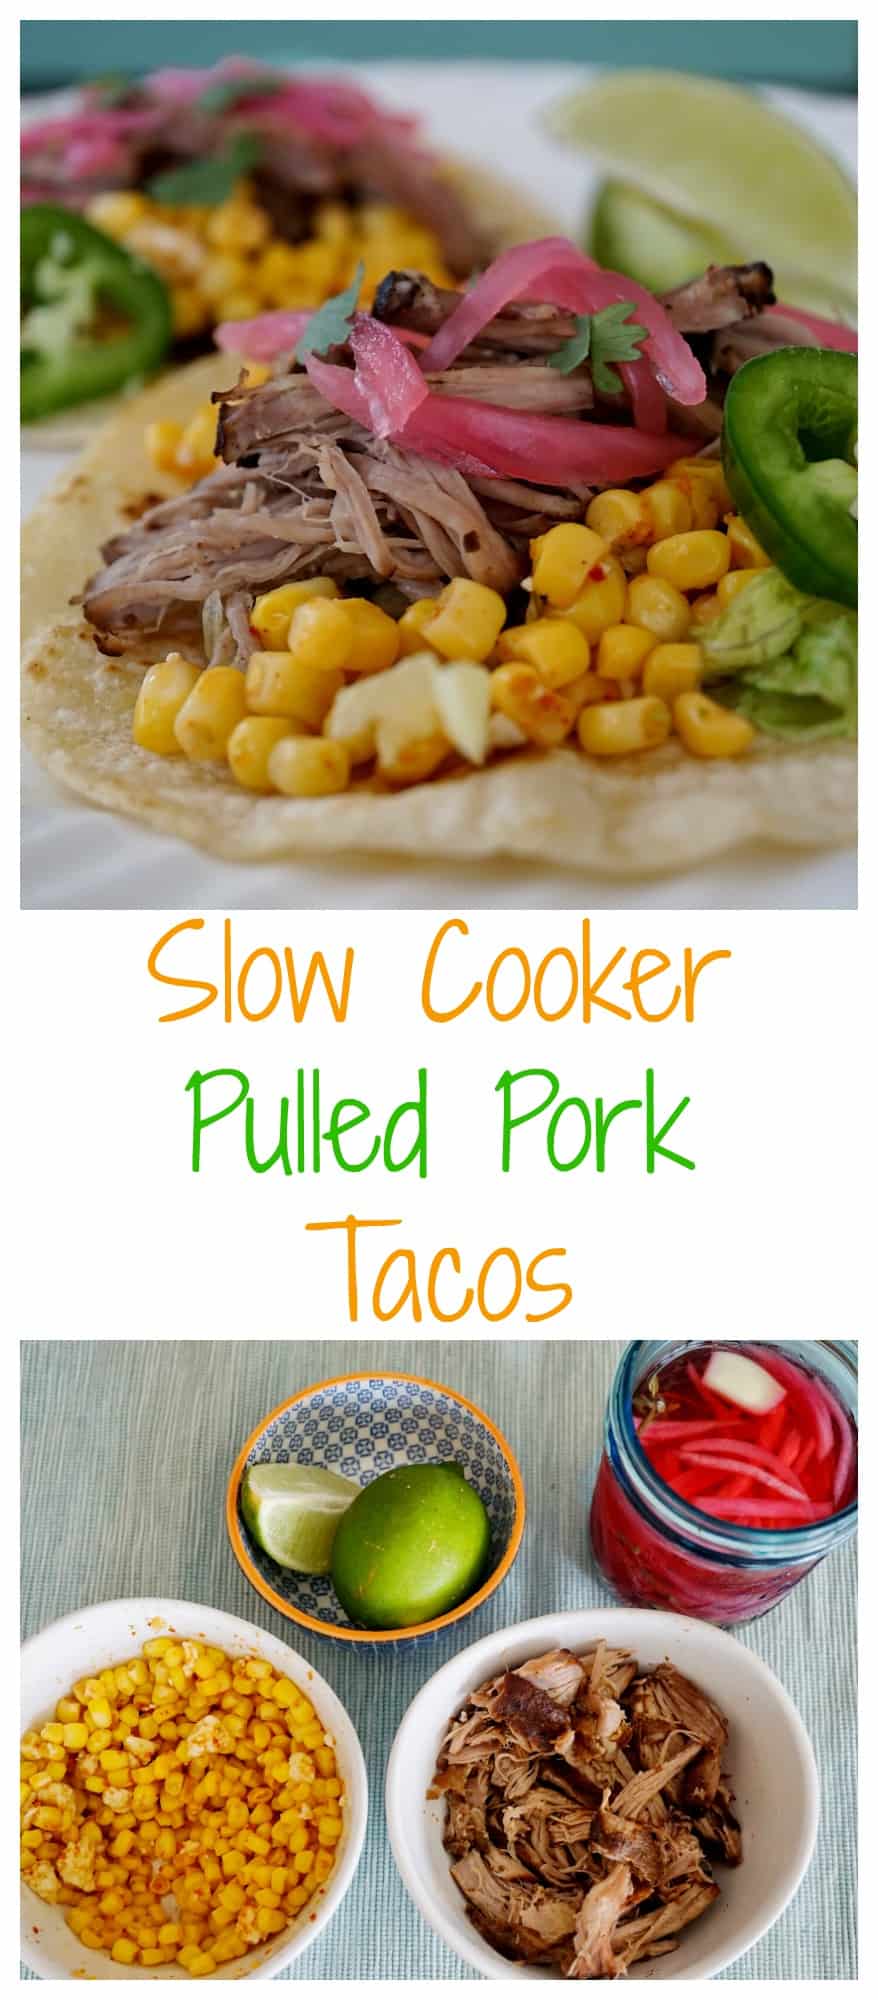 Slow Cooker Pulled Pork Tacos